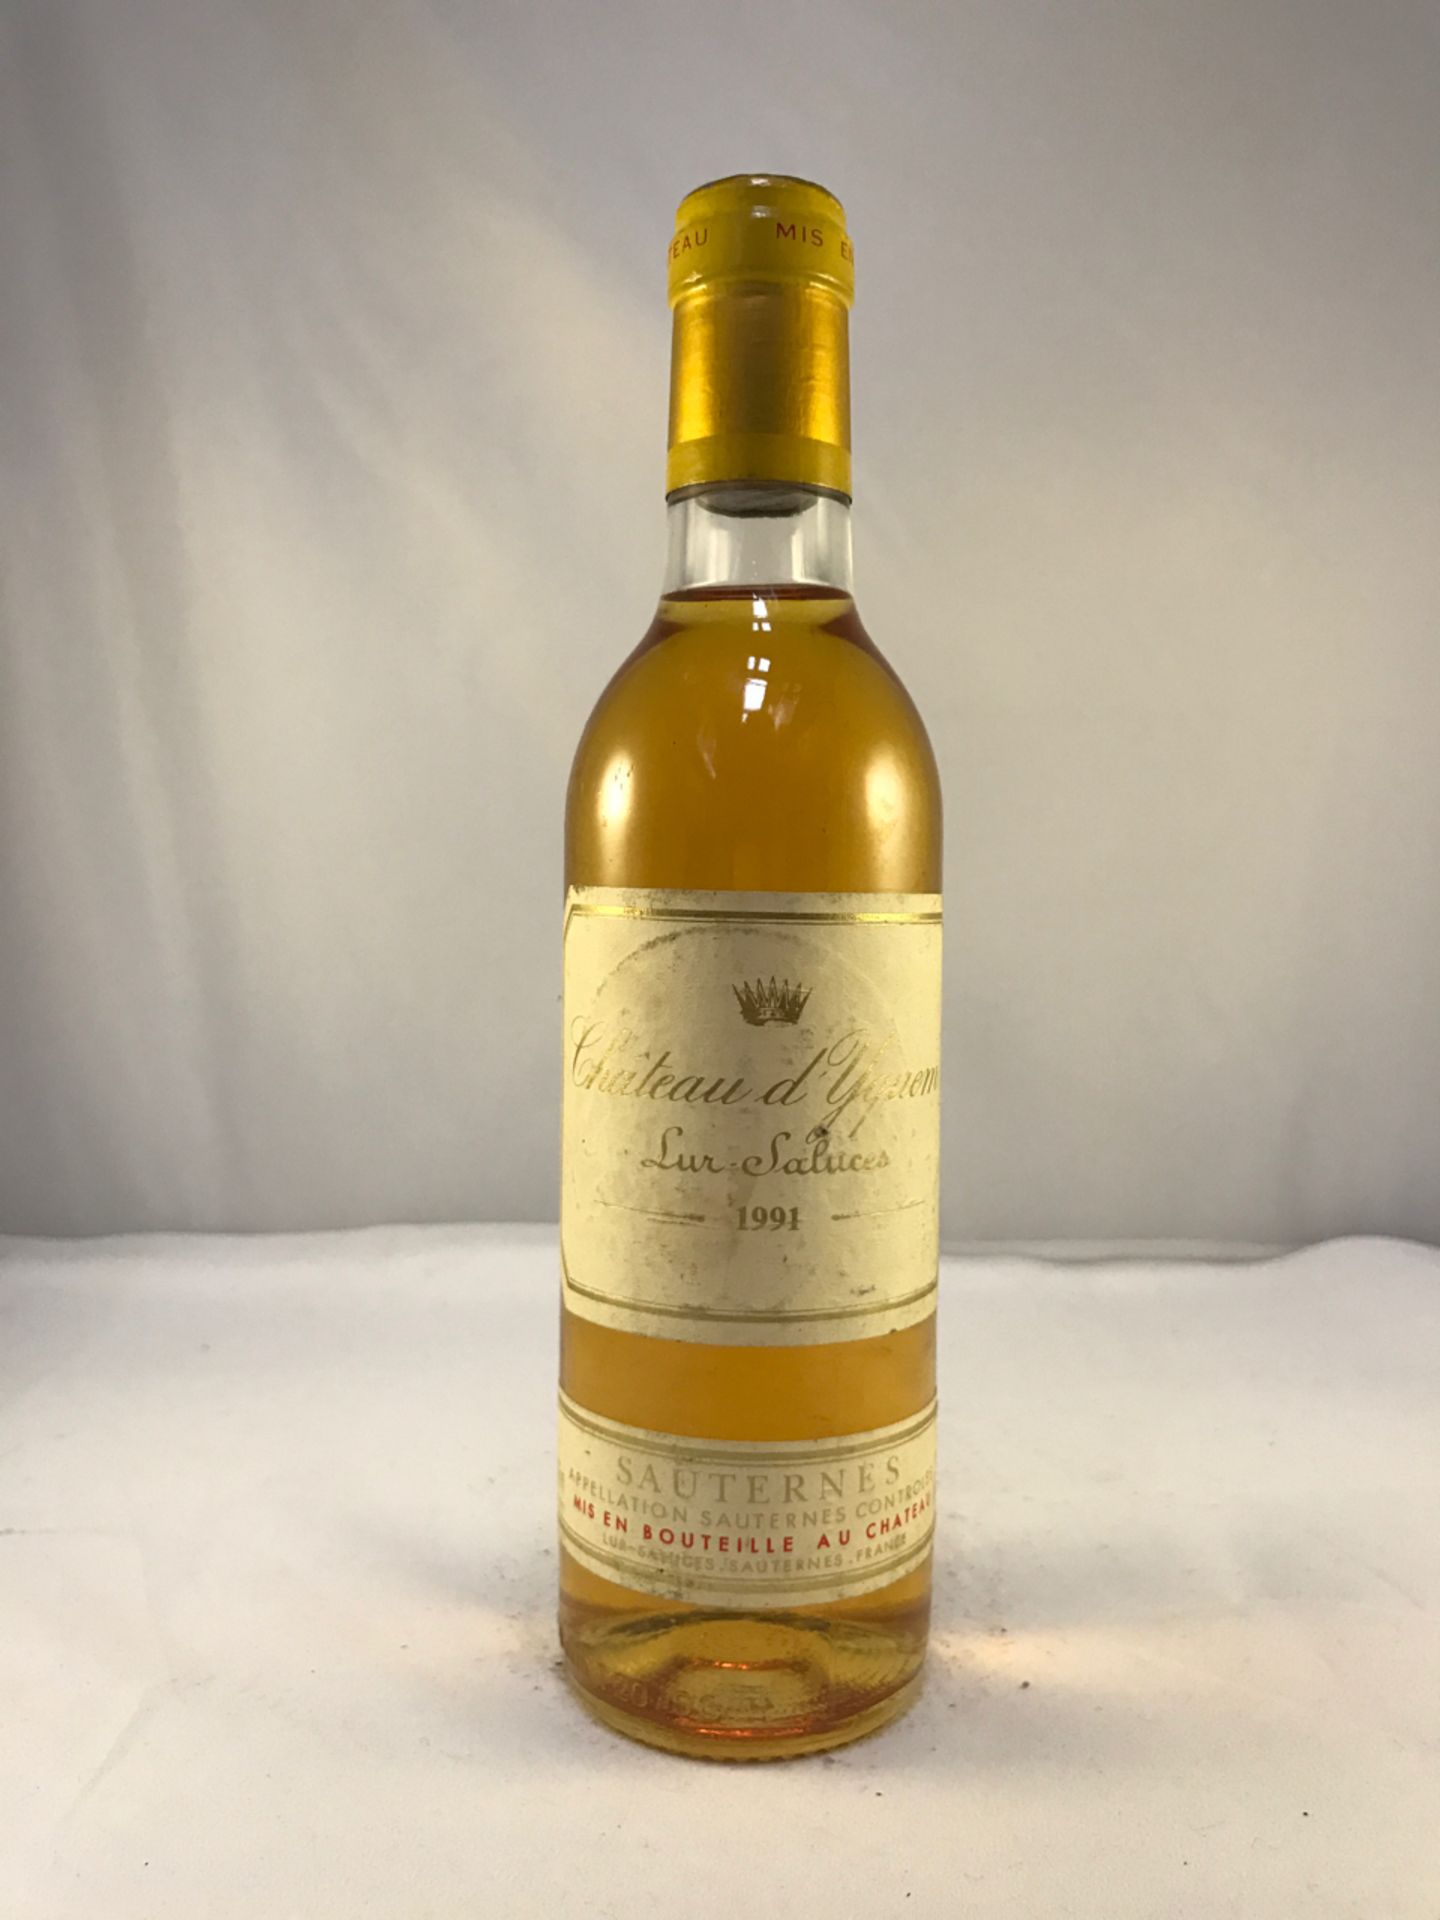 Chateau d'Yquem Sauternes (A.K.A Lur Saluces) 1991 375ml Bottle